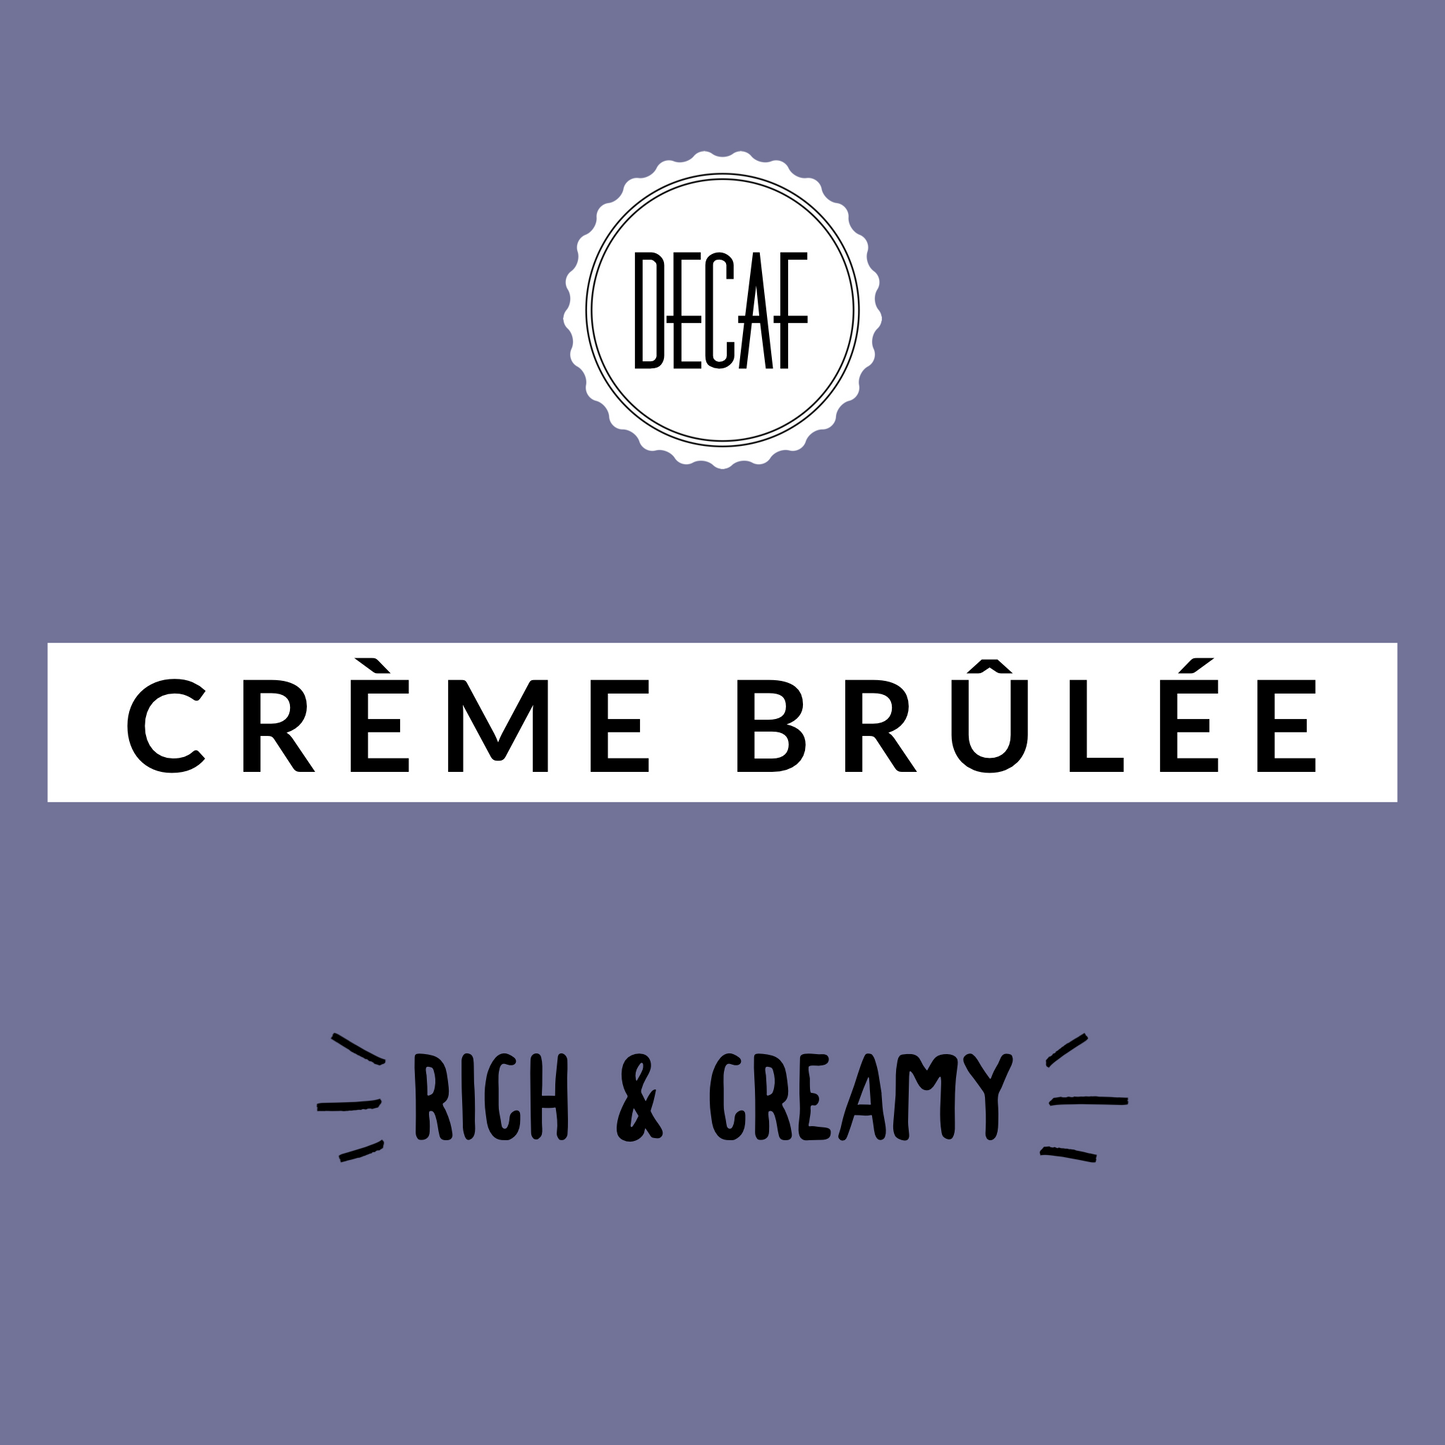 Crème Brûlée Decaf